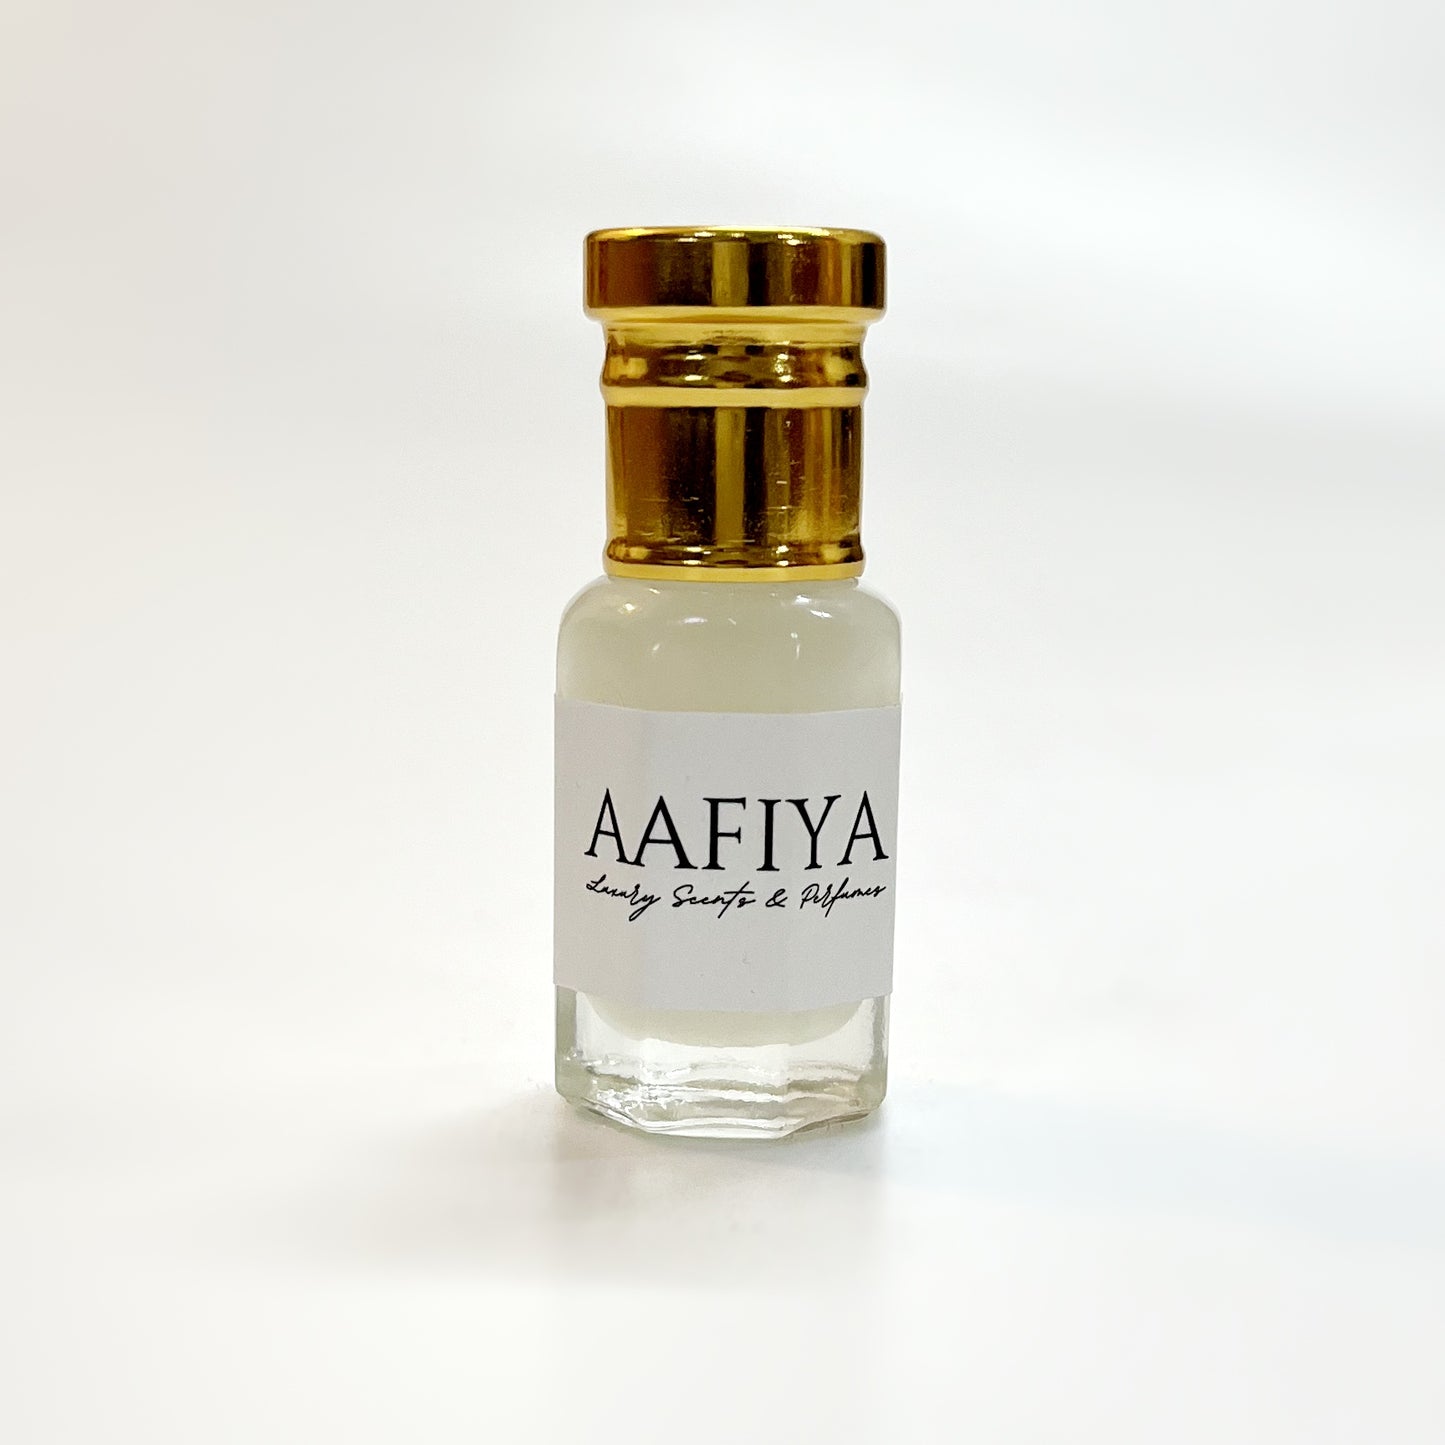 Royal Musk Tahara Aafiya Luxury Scents & Perfumes